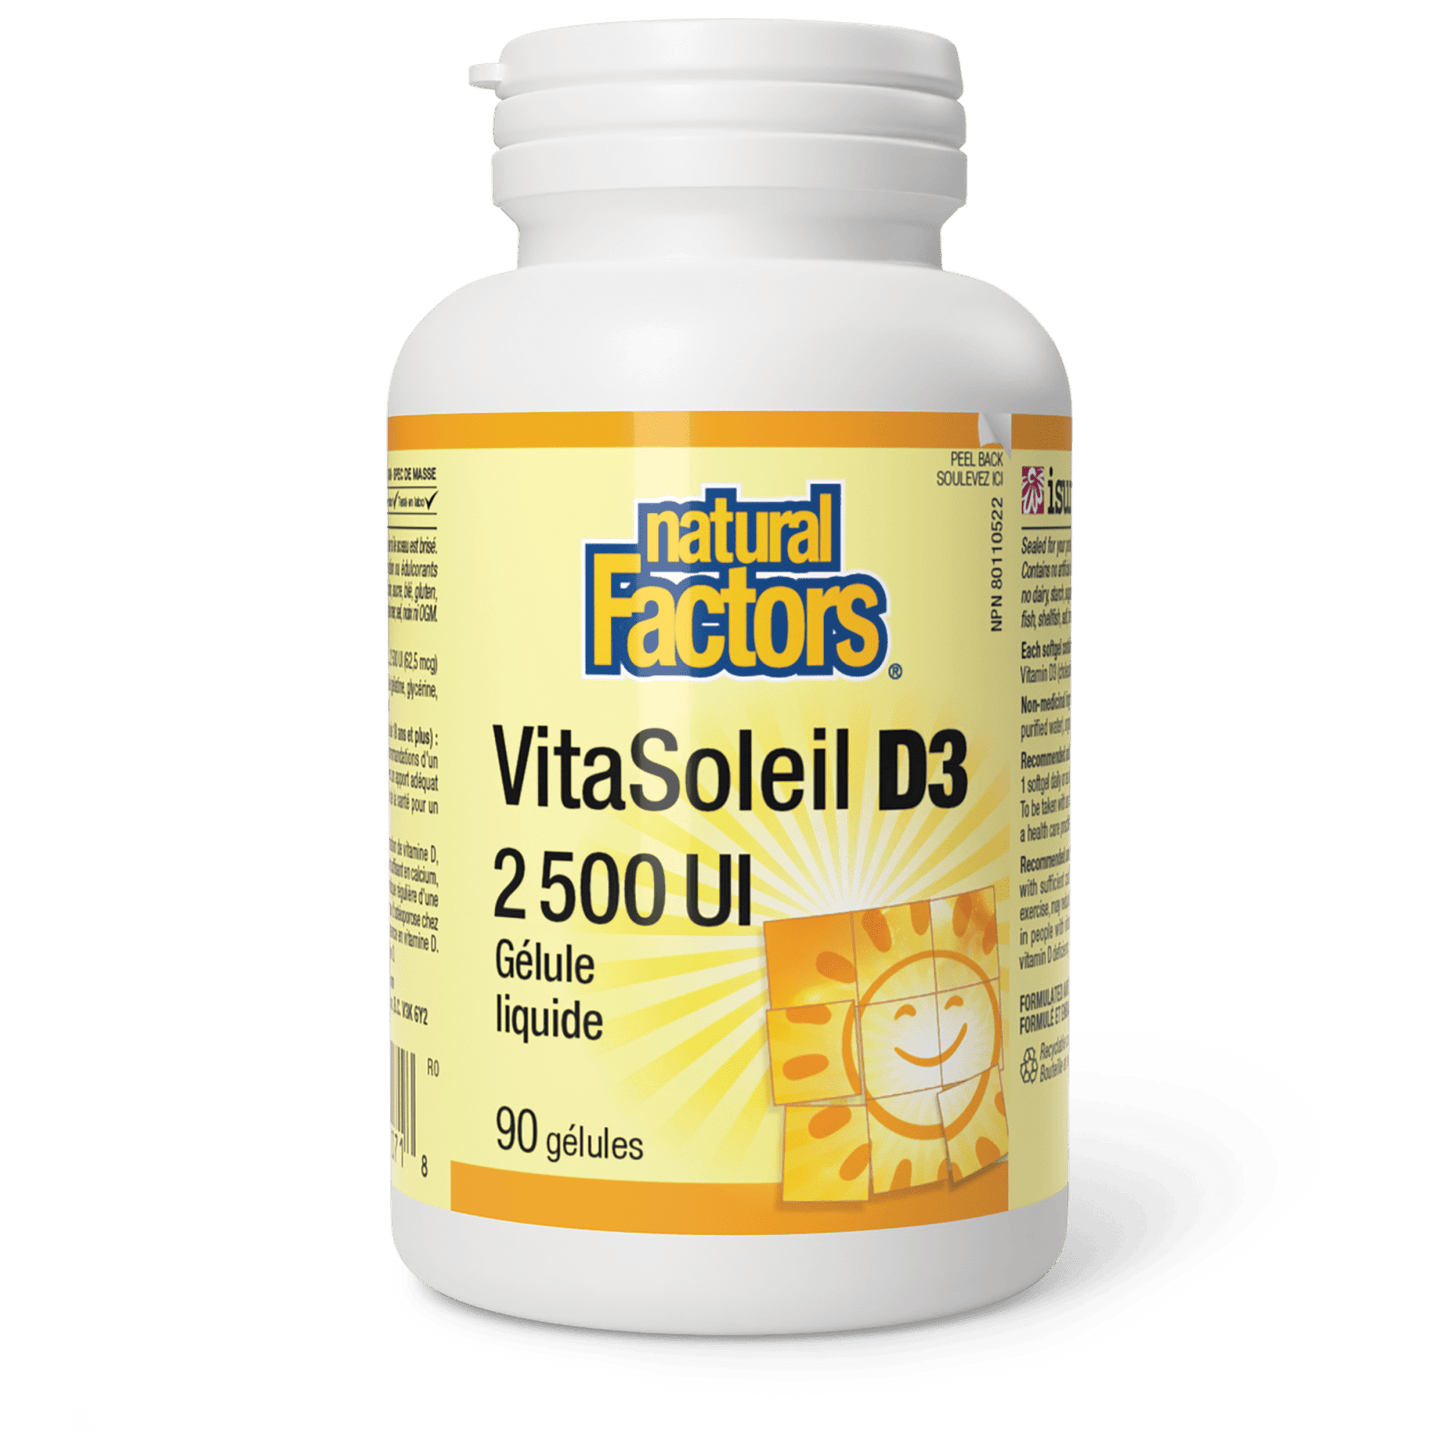 VitaSoleil D3 gélules 2 500 UI, Natural Factors|v|image|1071